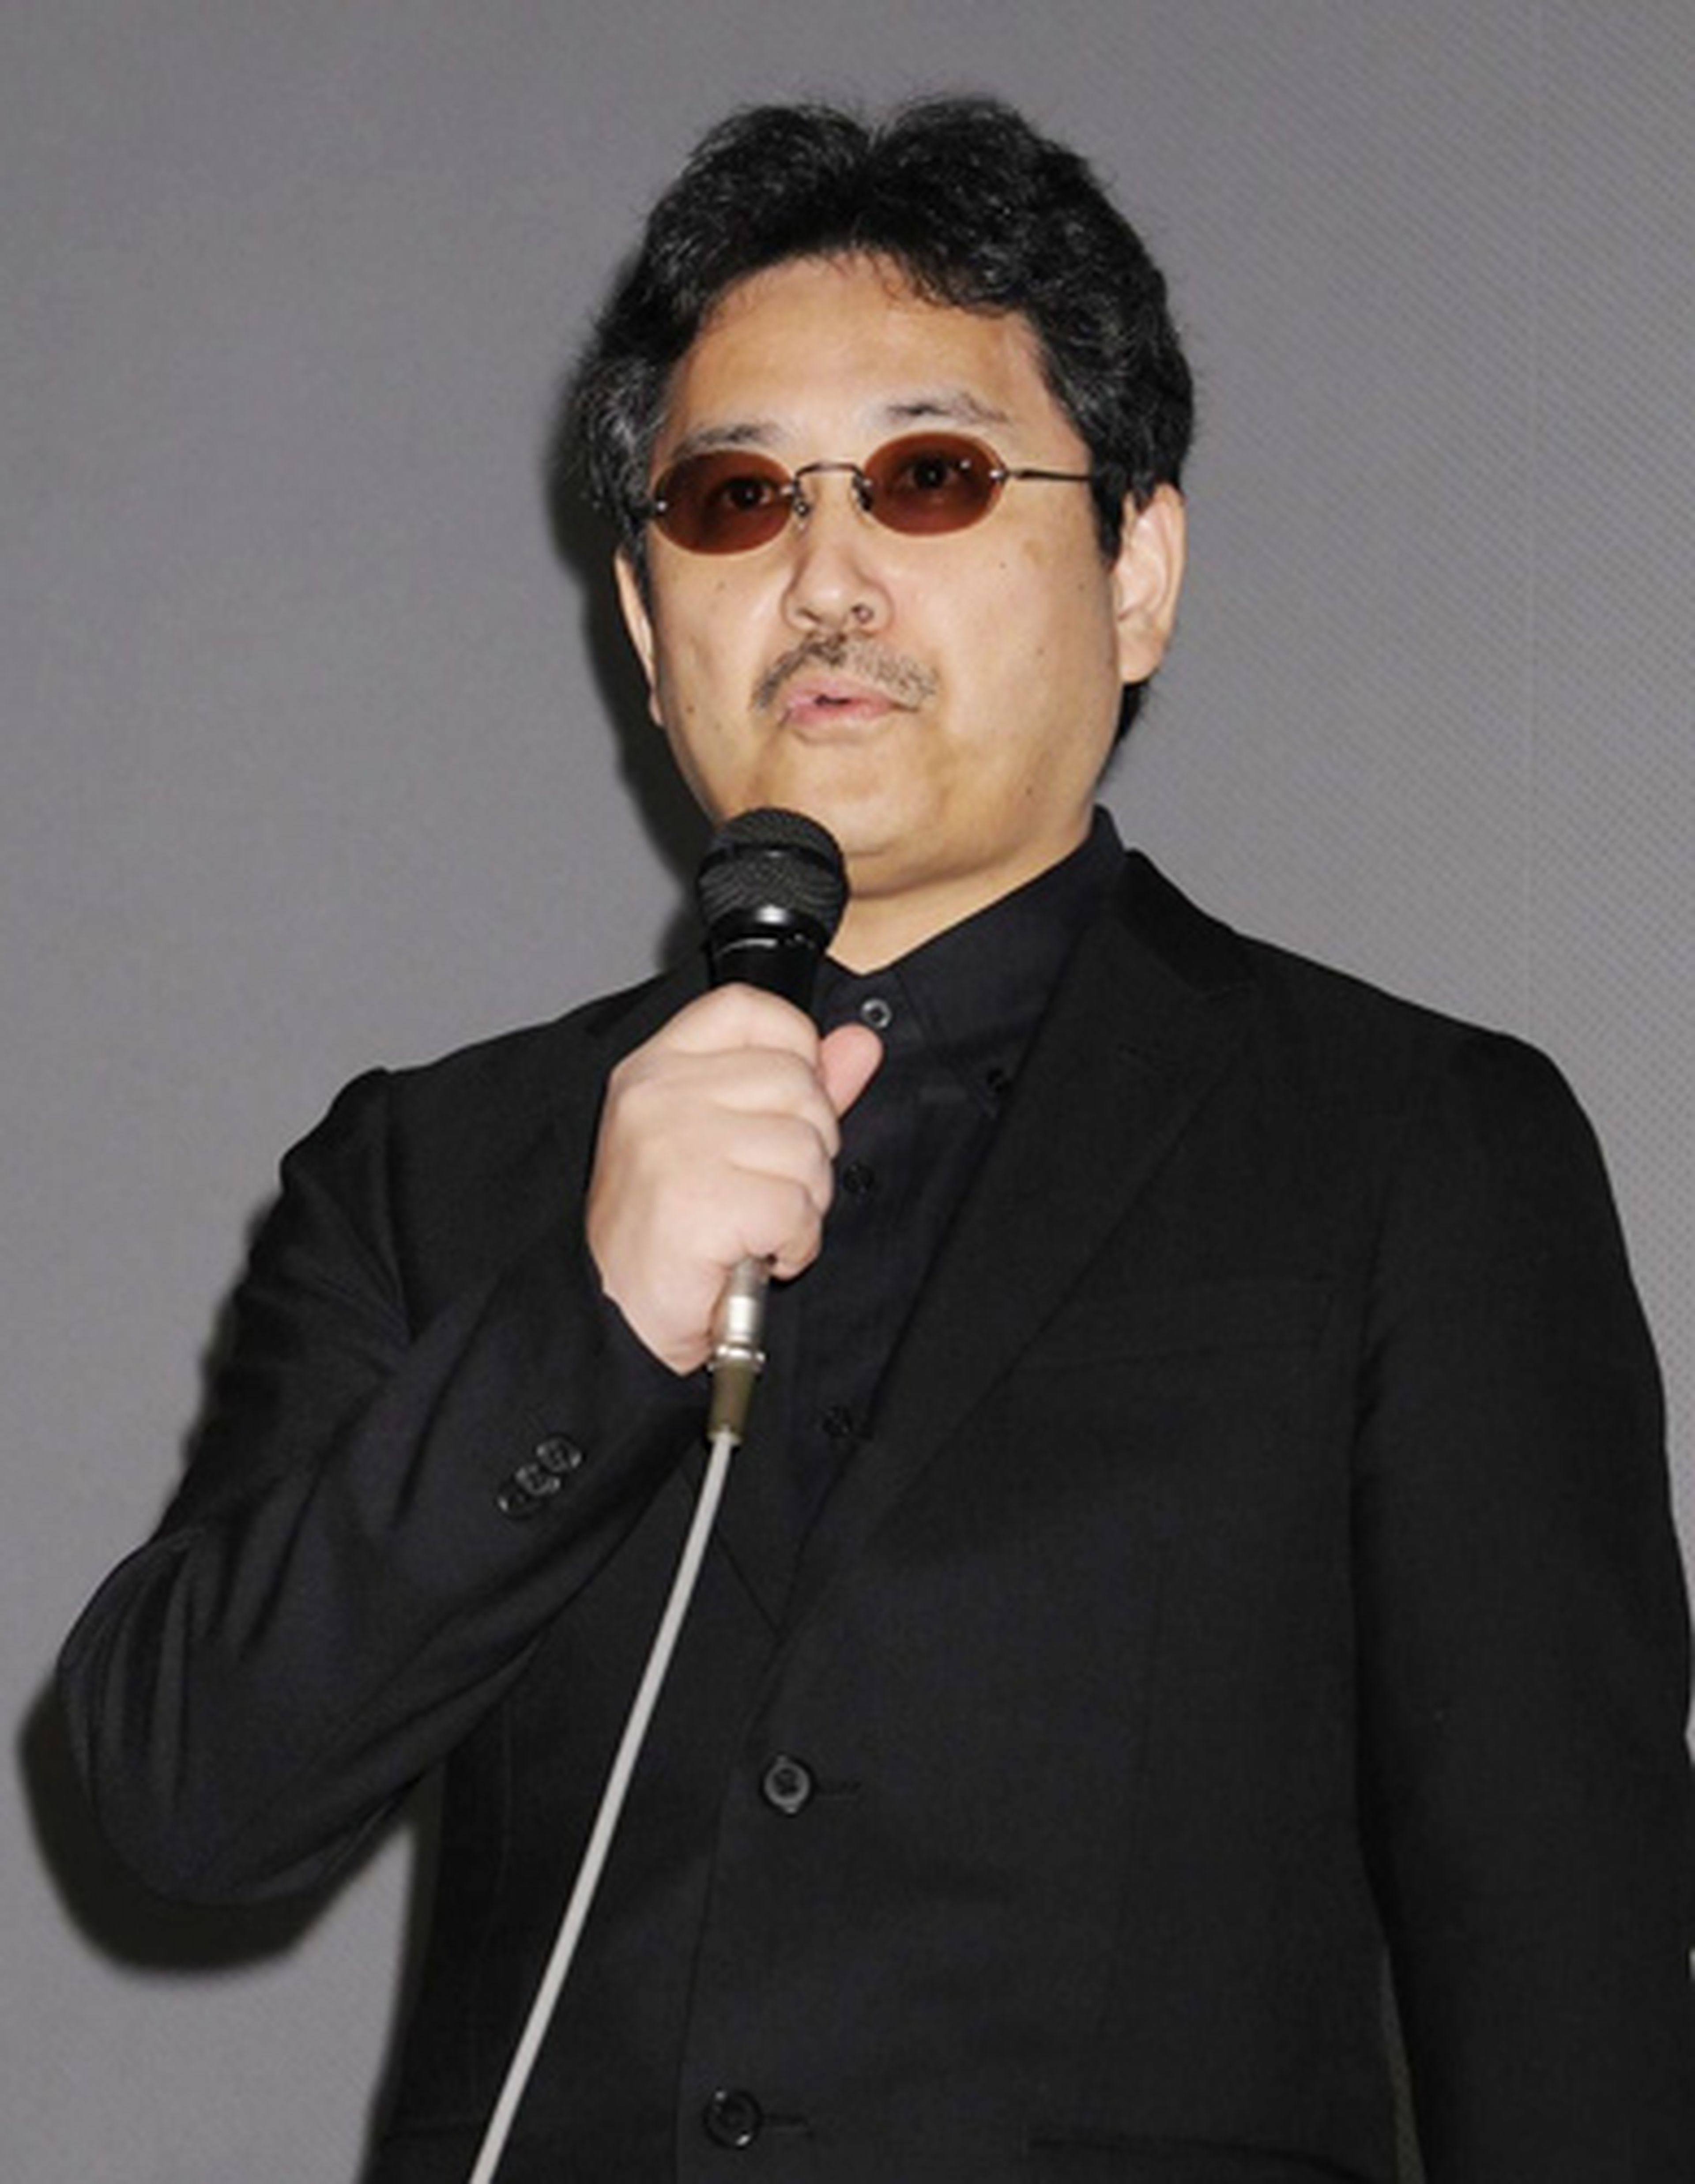 Toshiyuki Kubooka, invitado para el Salón del Manga de Barcelona